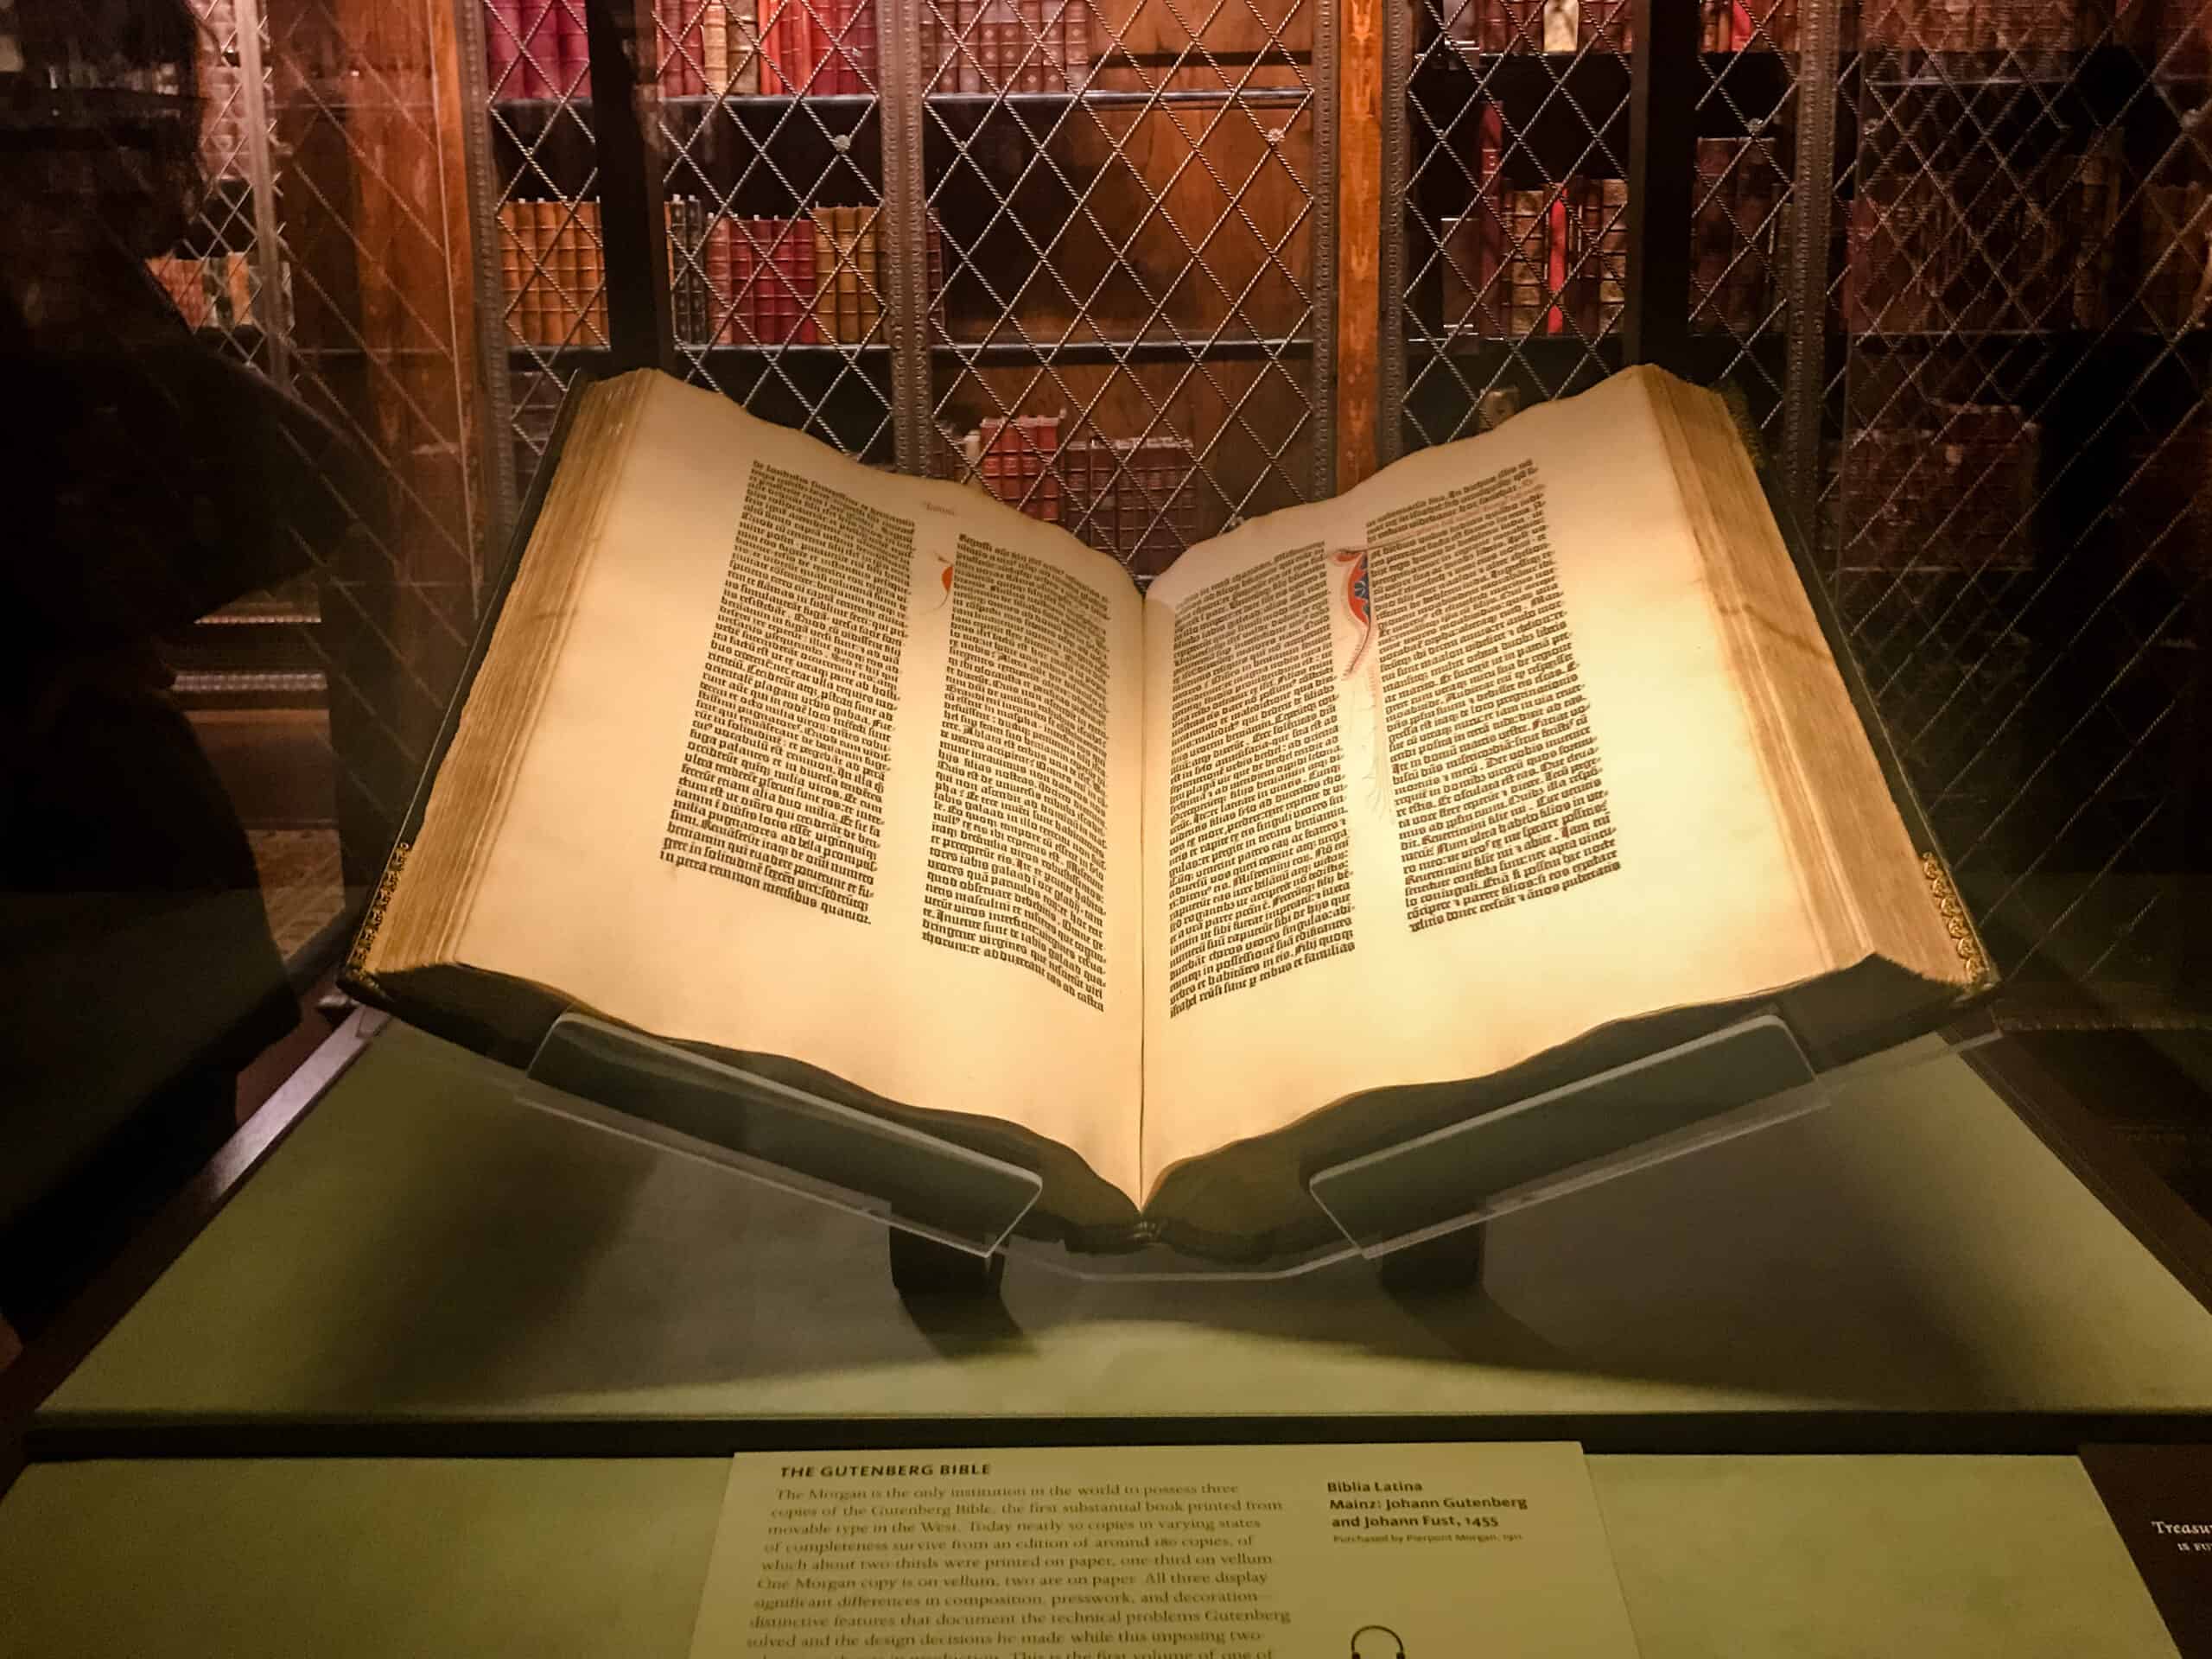 The Gutenberg Bible (1455)